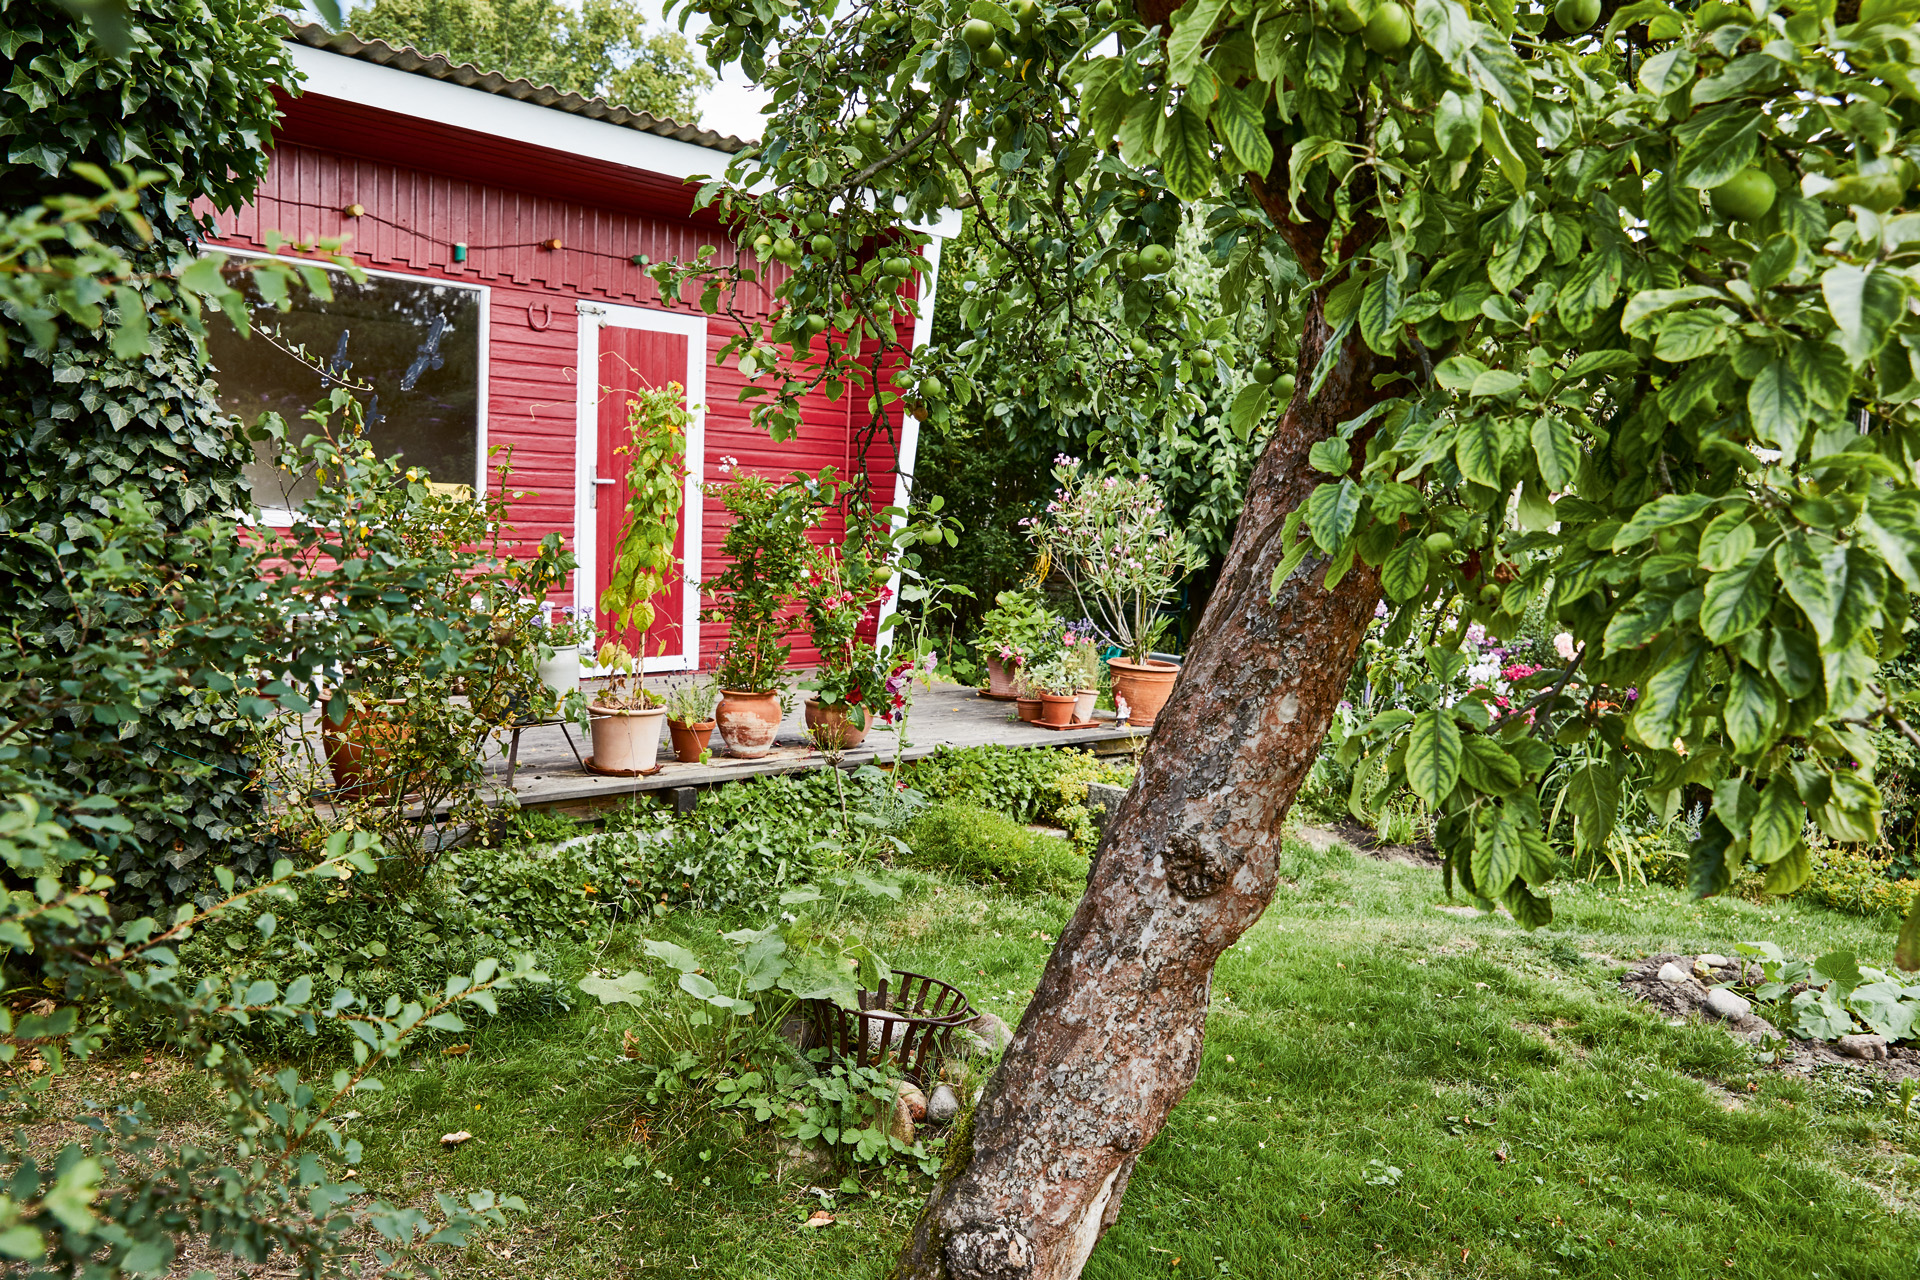 Albero da frutto in un giardino davanti a una seconda casa rossa